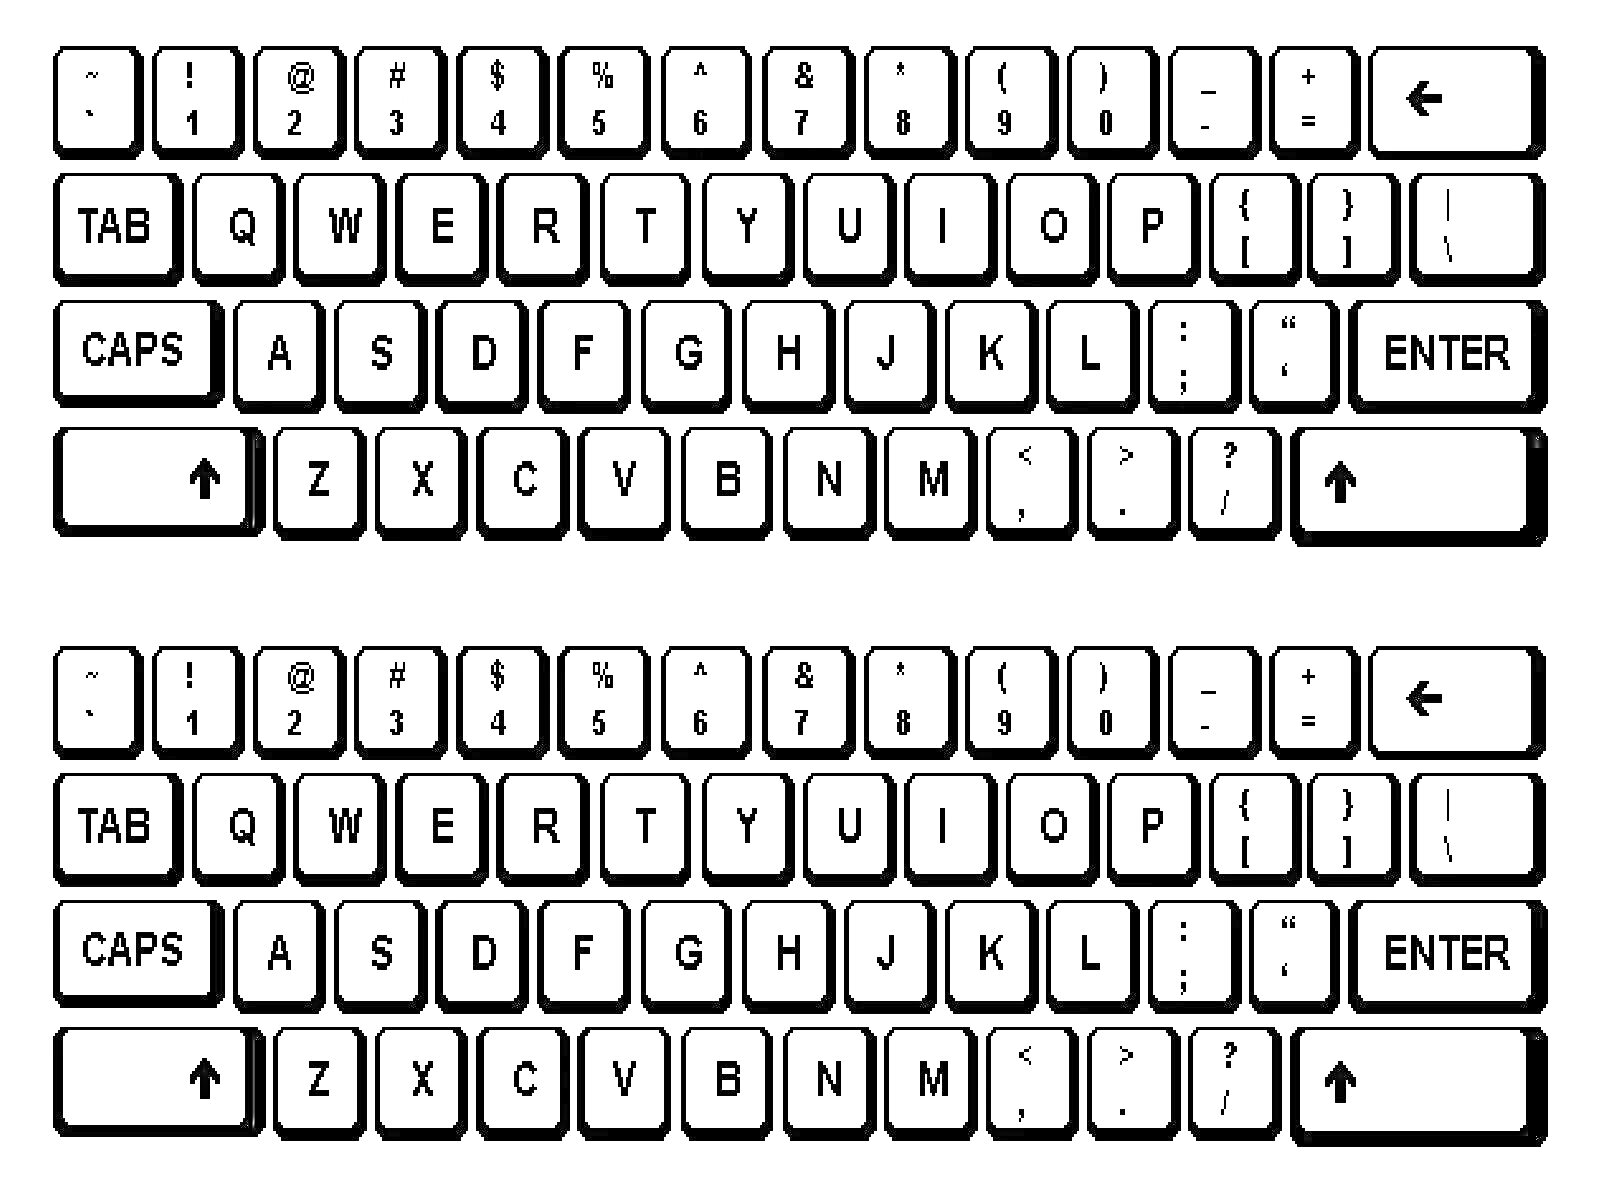 Раскраска Раскраска с полной раскладкой клавиатуры, включая числа, буквы и служебные клавиши (TAB, QWERTY клавиши, CAPS, Shift, ENTER, стрелки).